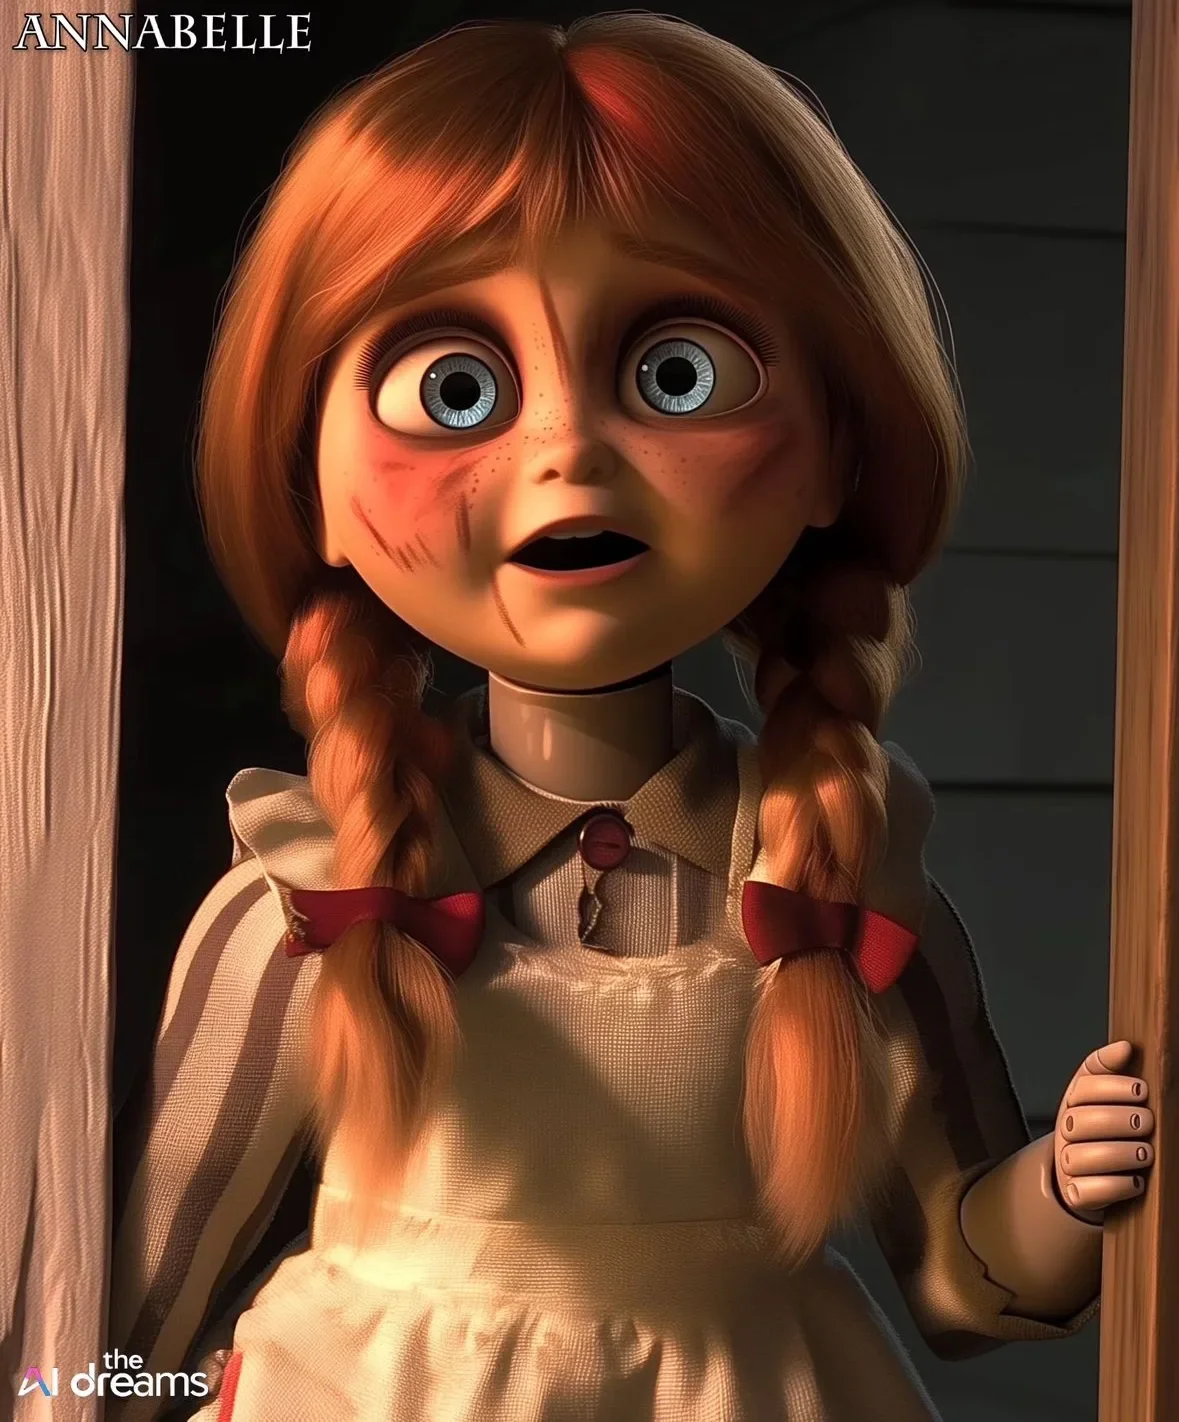 ตัวละคร ไอคอนในหนังสยองขวัญ Horror Icons แอนิเมชั่น Disney Pixar Aiart